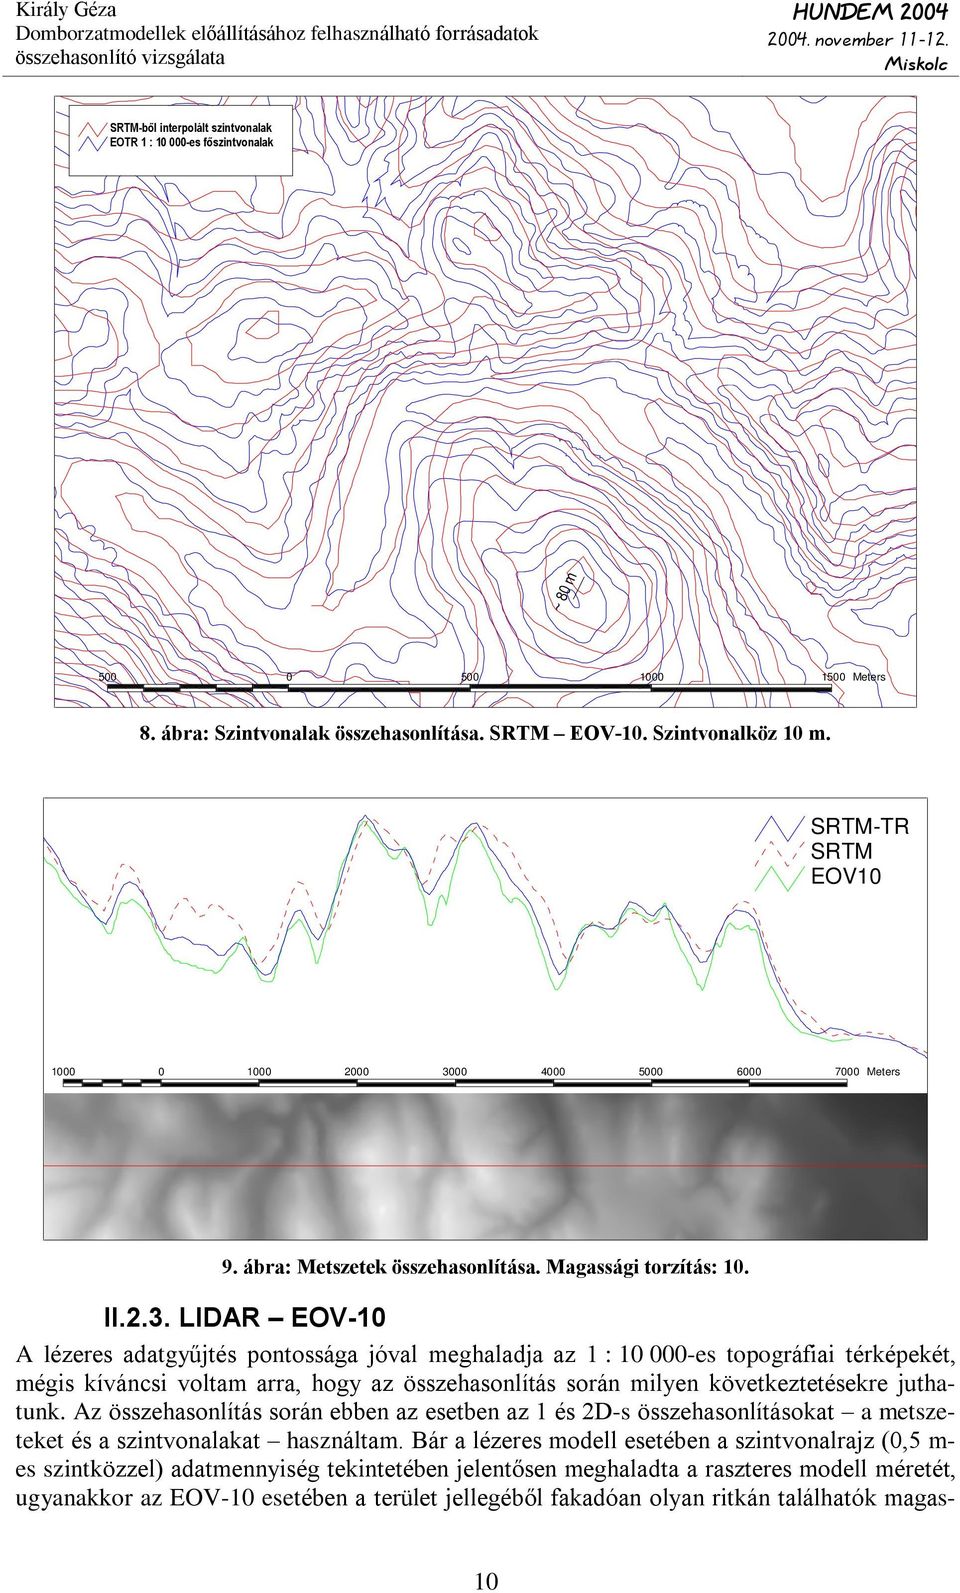 Látható, hogy a D-i részen (bal oldali ábra) a 115 m-es LIDAR fõszintvonal megegyezik az EOV-10 115,5 m-es szintvonalával, a következõ szintvonalpár (115,5 és 116 m) esetében bár van eltérés, de a